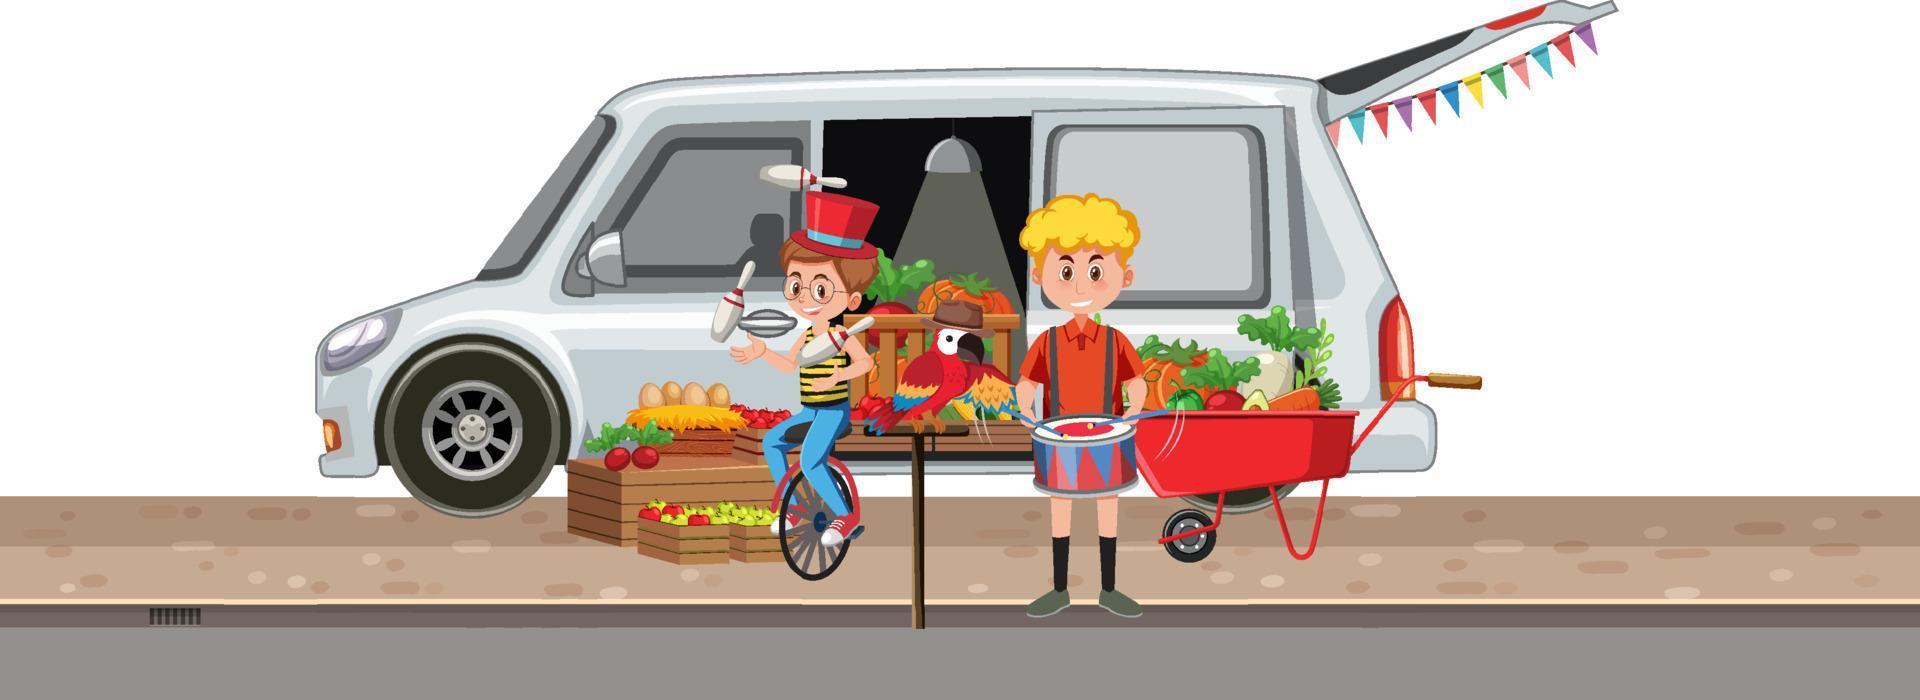 escena con niños y furgoneta de verduras. vector